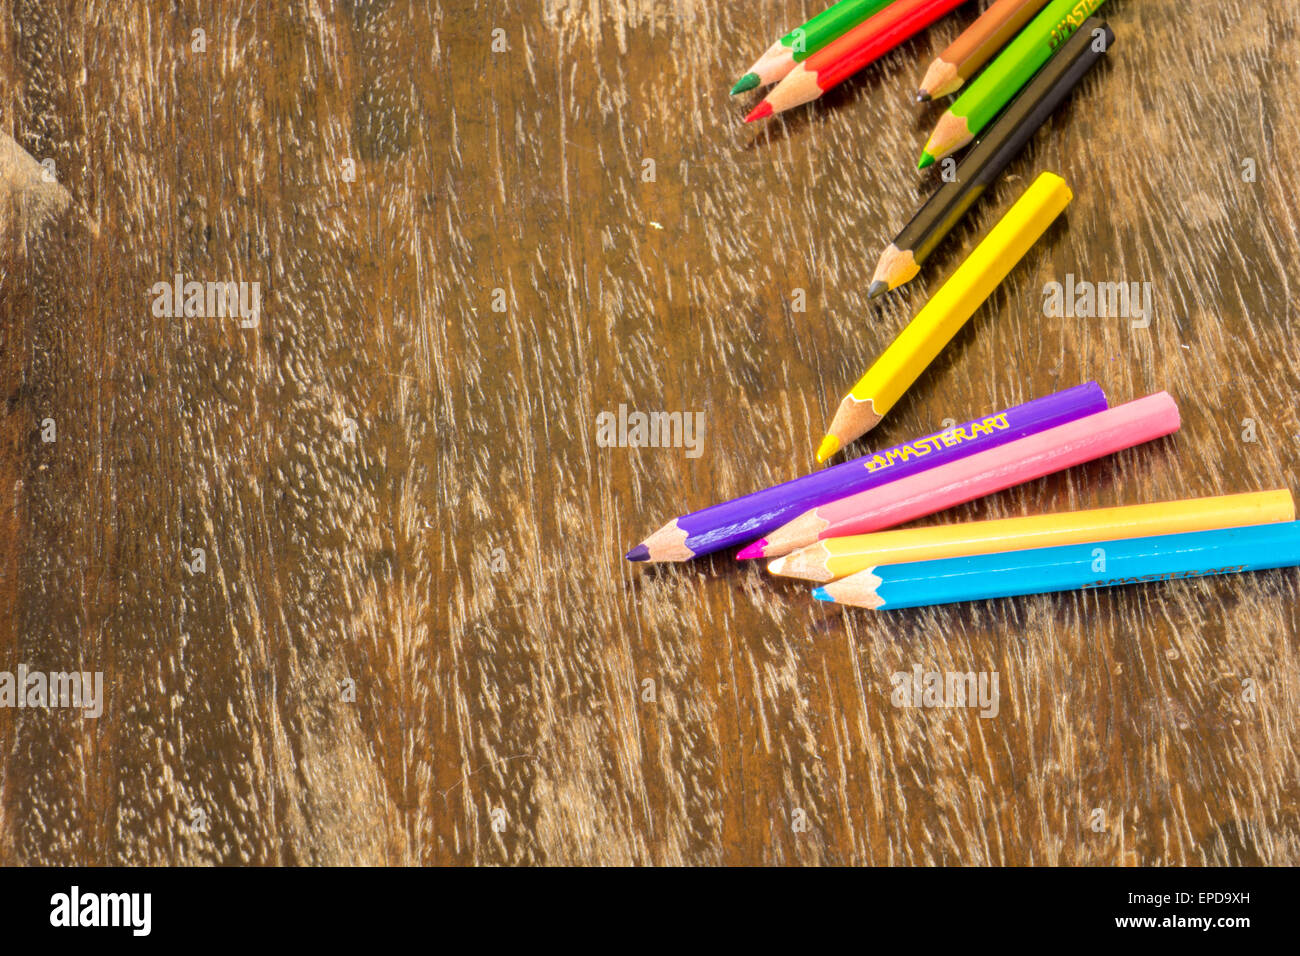 Sortieren Sie Buntstifte Bodenbelag Oberflächen, helle Farben, rot, gelb, schwarz, Orange und grün. Stockfoto